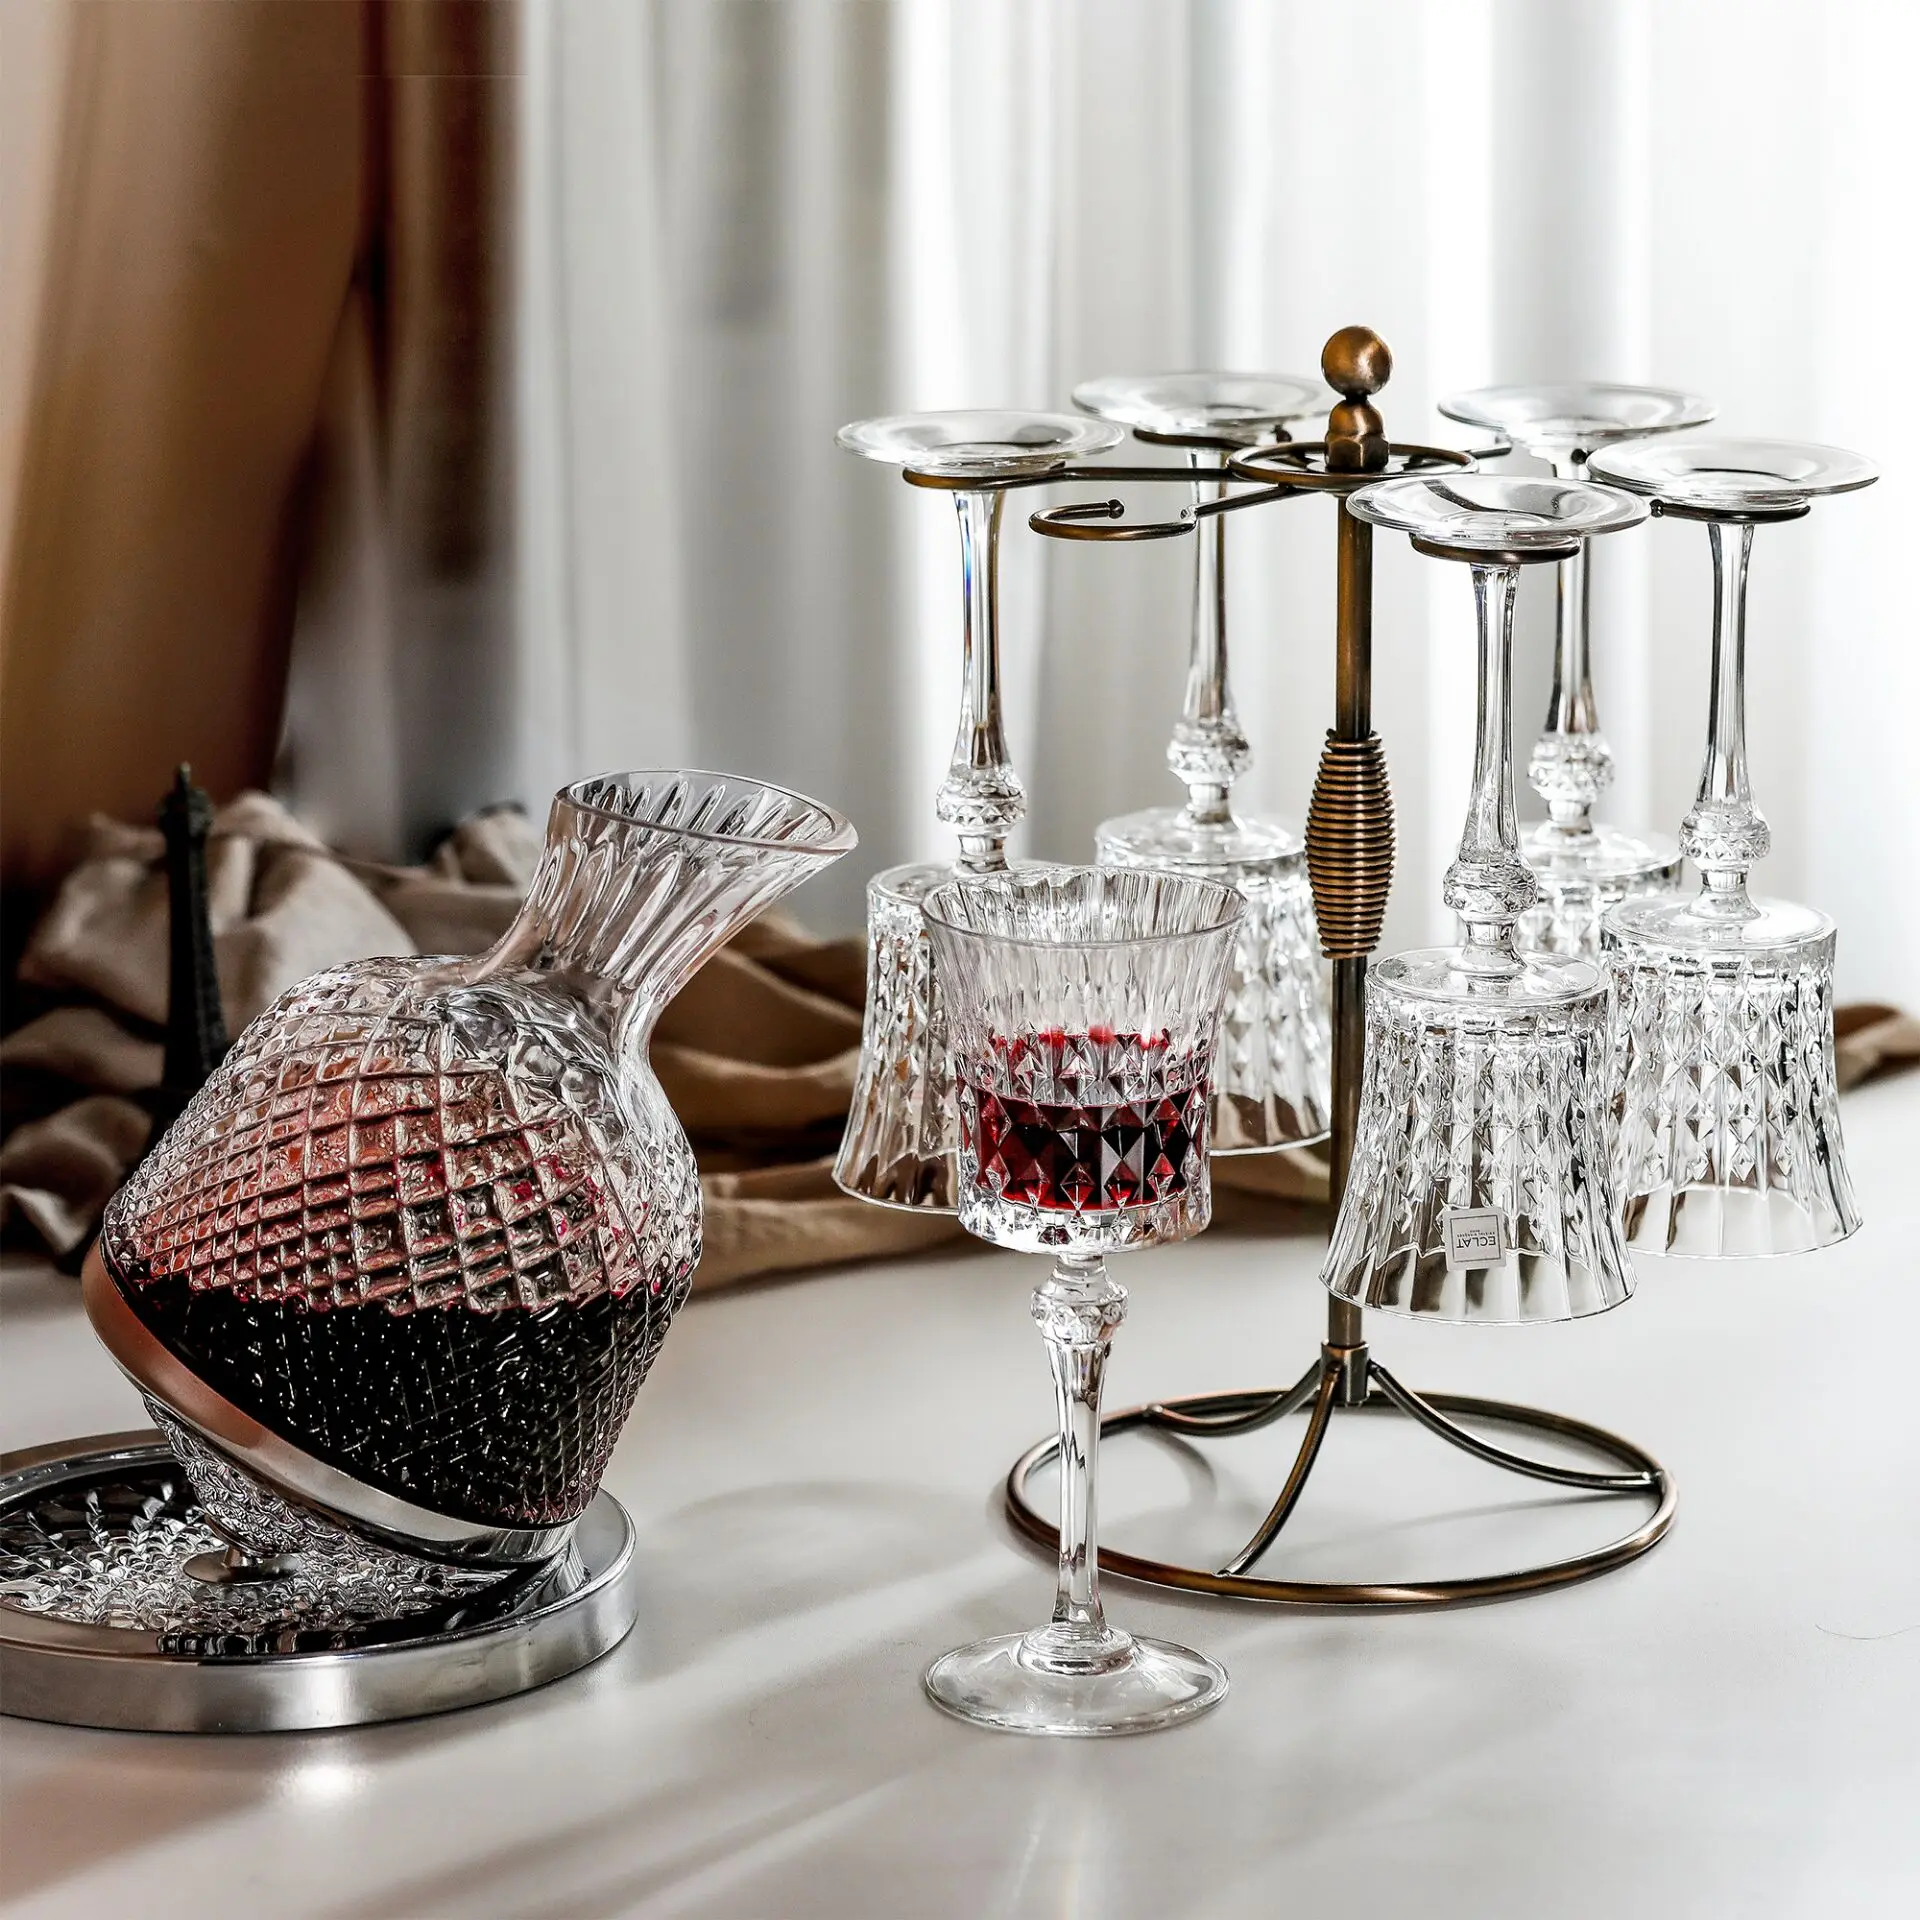 

Новый европейский хрустальный набор для вина, высококачественный Гироскопический стакан с основанием, держатель для стаканов, графин для вина, 6 бокалов для вина и винограда, лучший подарок